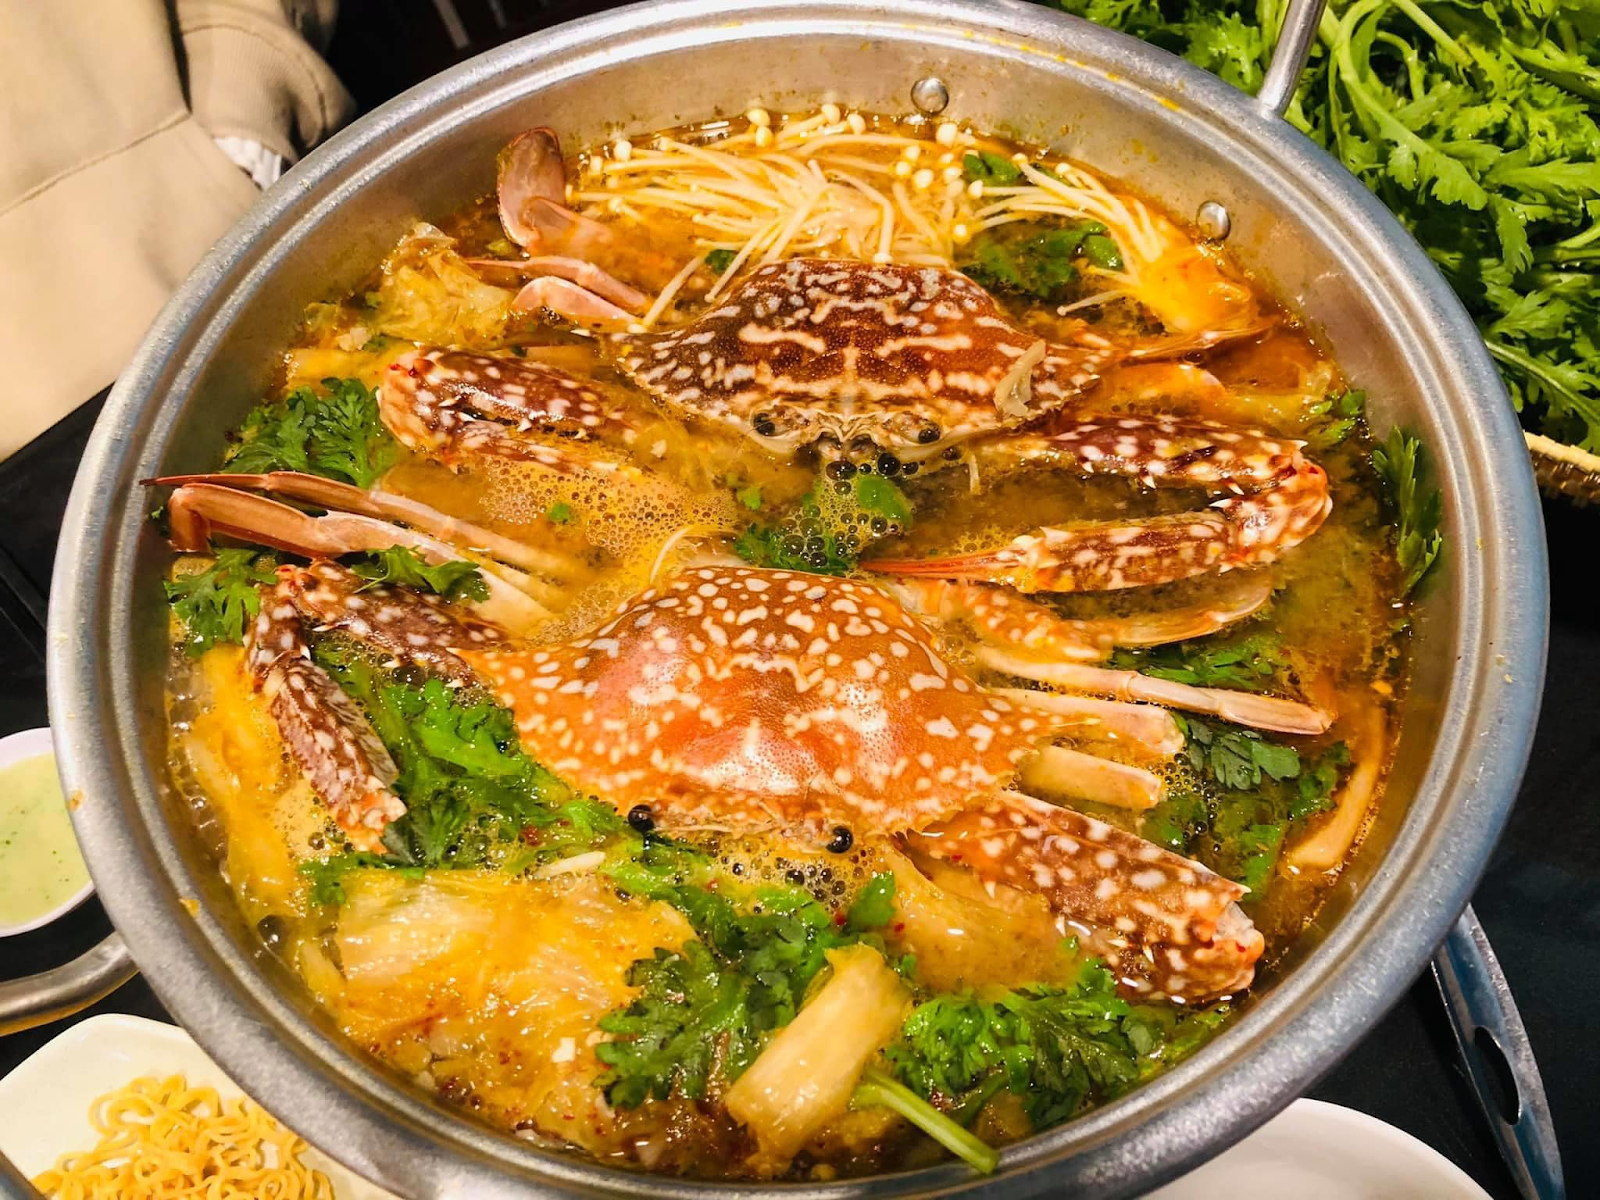 Quán lẩu ghẹ Kim Chi là địa điểm ăn trưa lý tưởng khi du lịch Đà Lạt cho những “fan” hải sản.